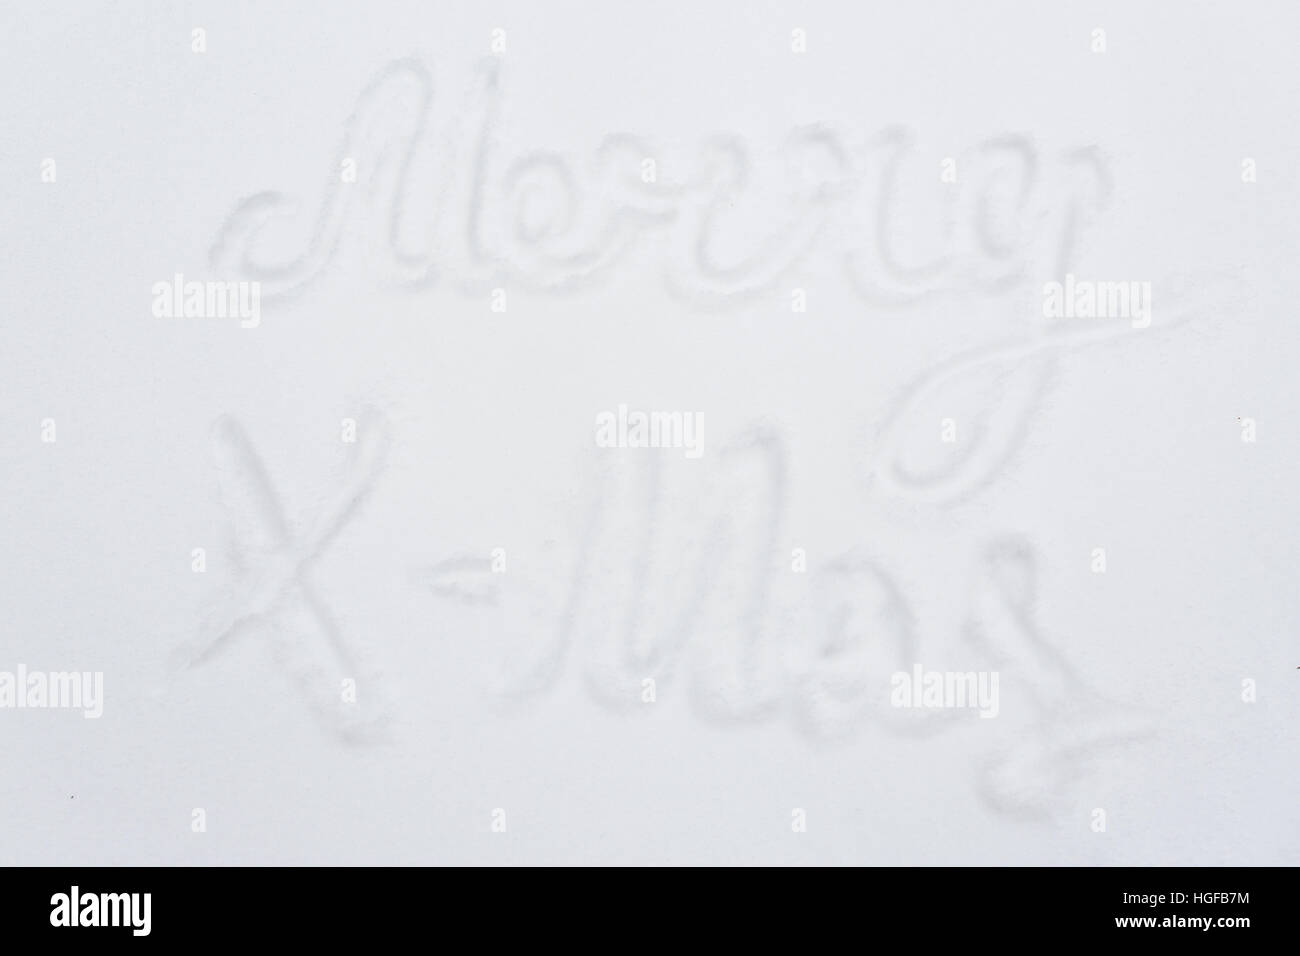 Frohe Weihnachten Worte zur Schneeoberfläche Stockfoto